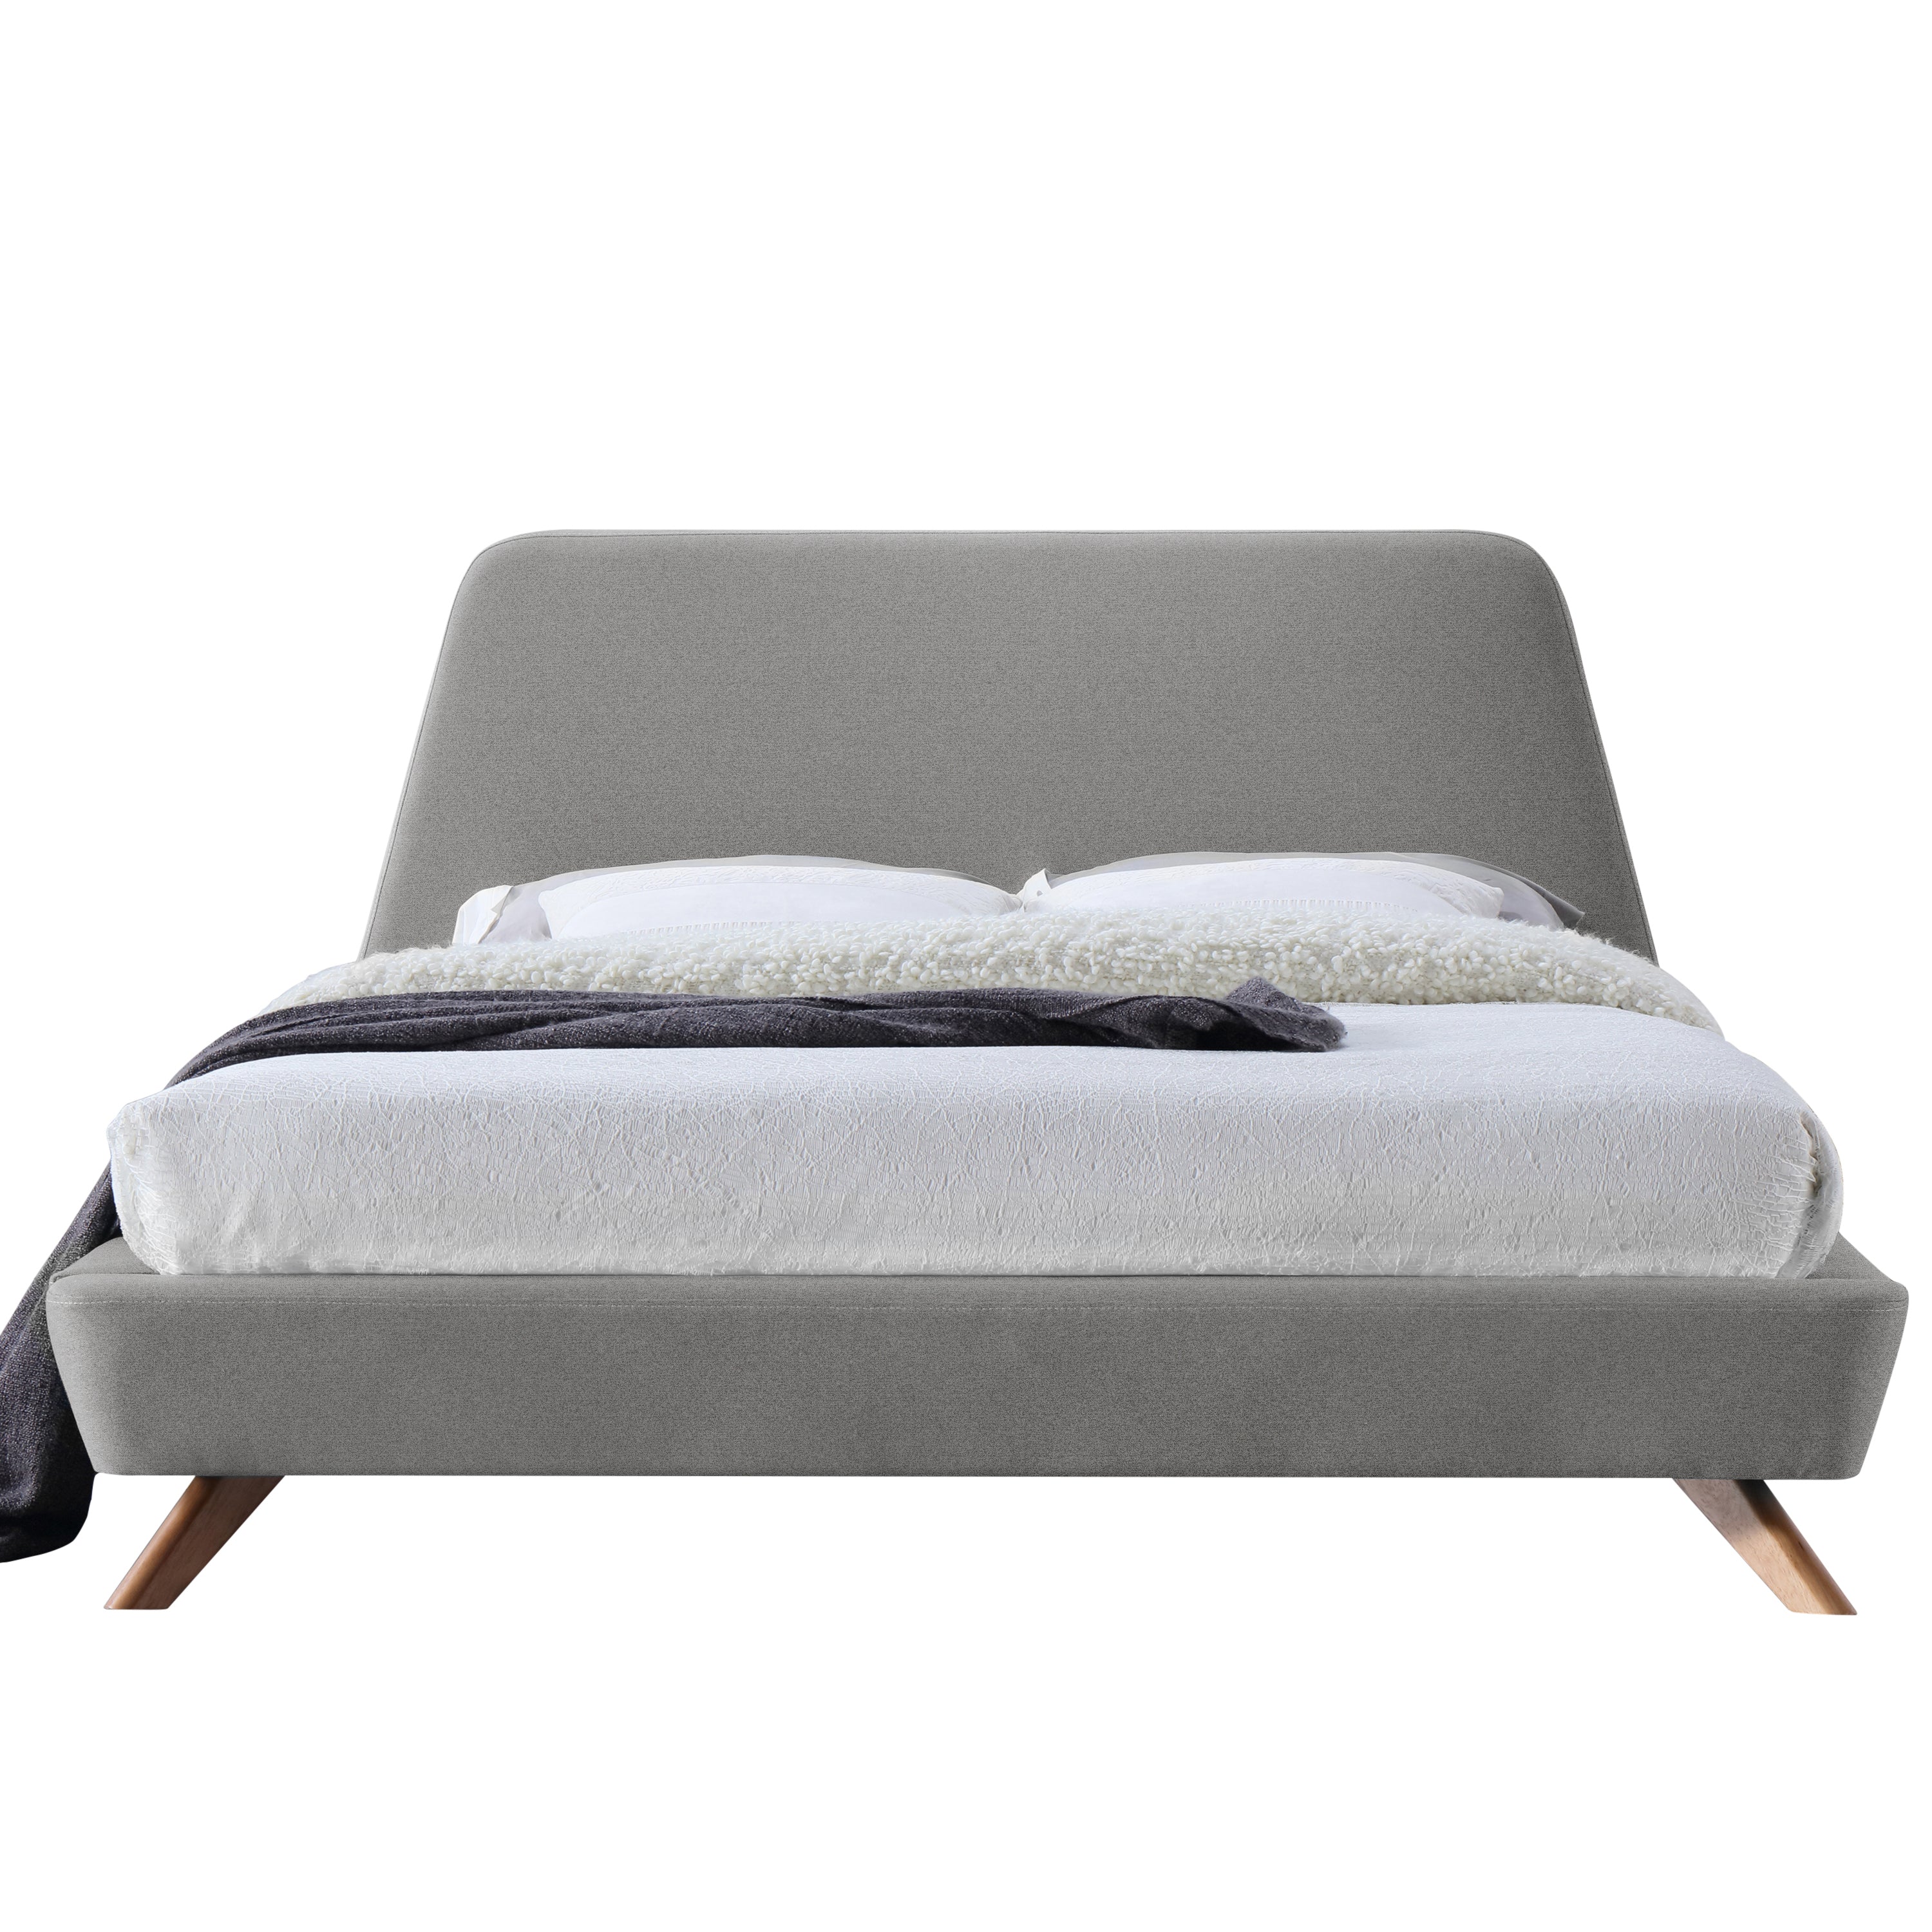 Henry Upholstered Platform Bed - Queen size, Grey